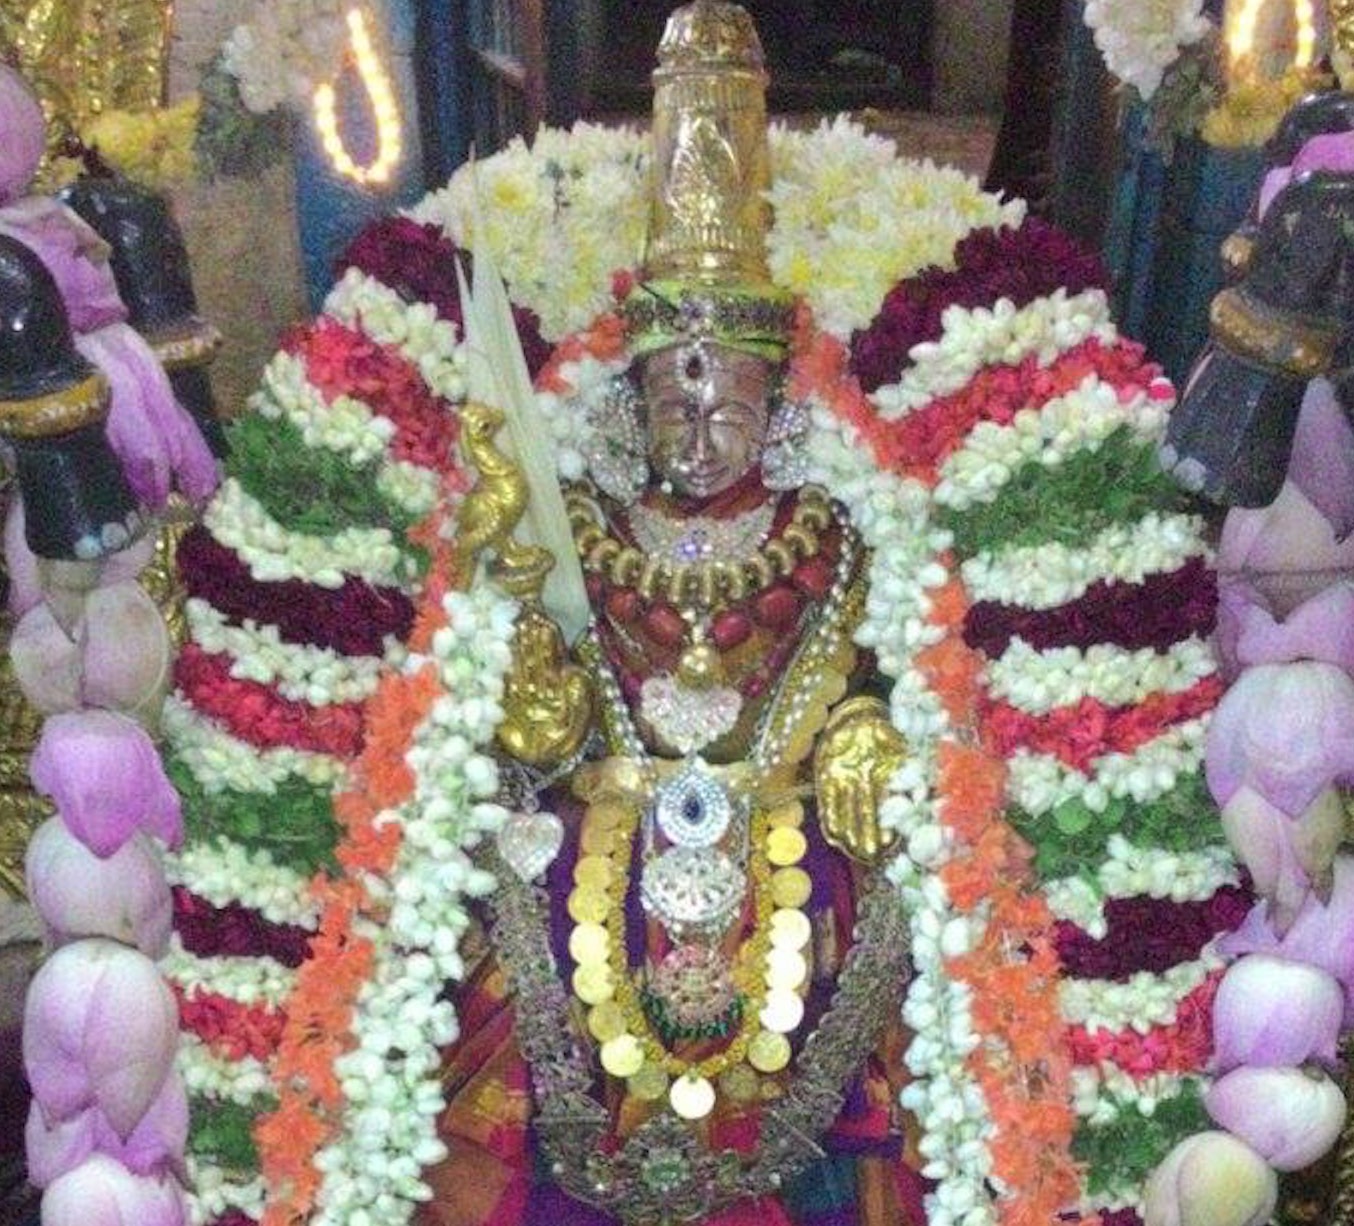 Kooram Sri Adhikesava Perumal Temple Manmadha Varusha Aadi Velli Thayar Purappadu